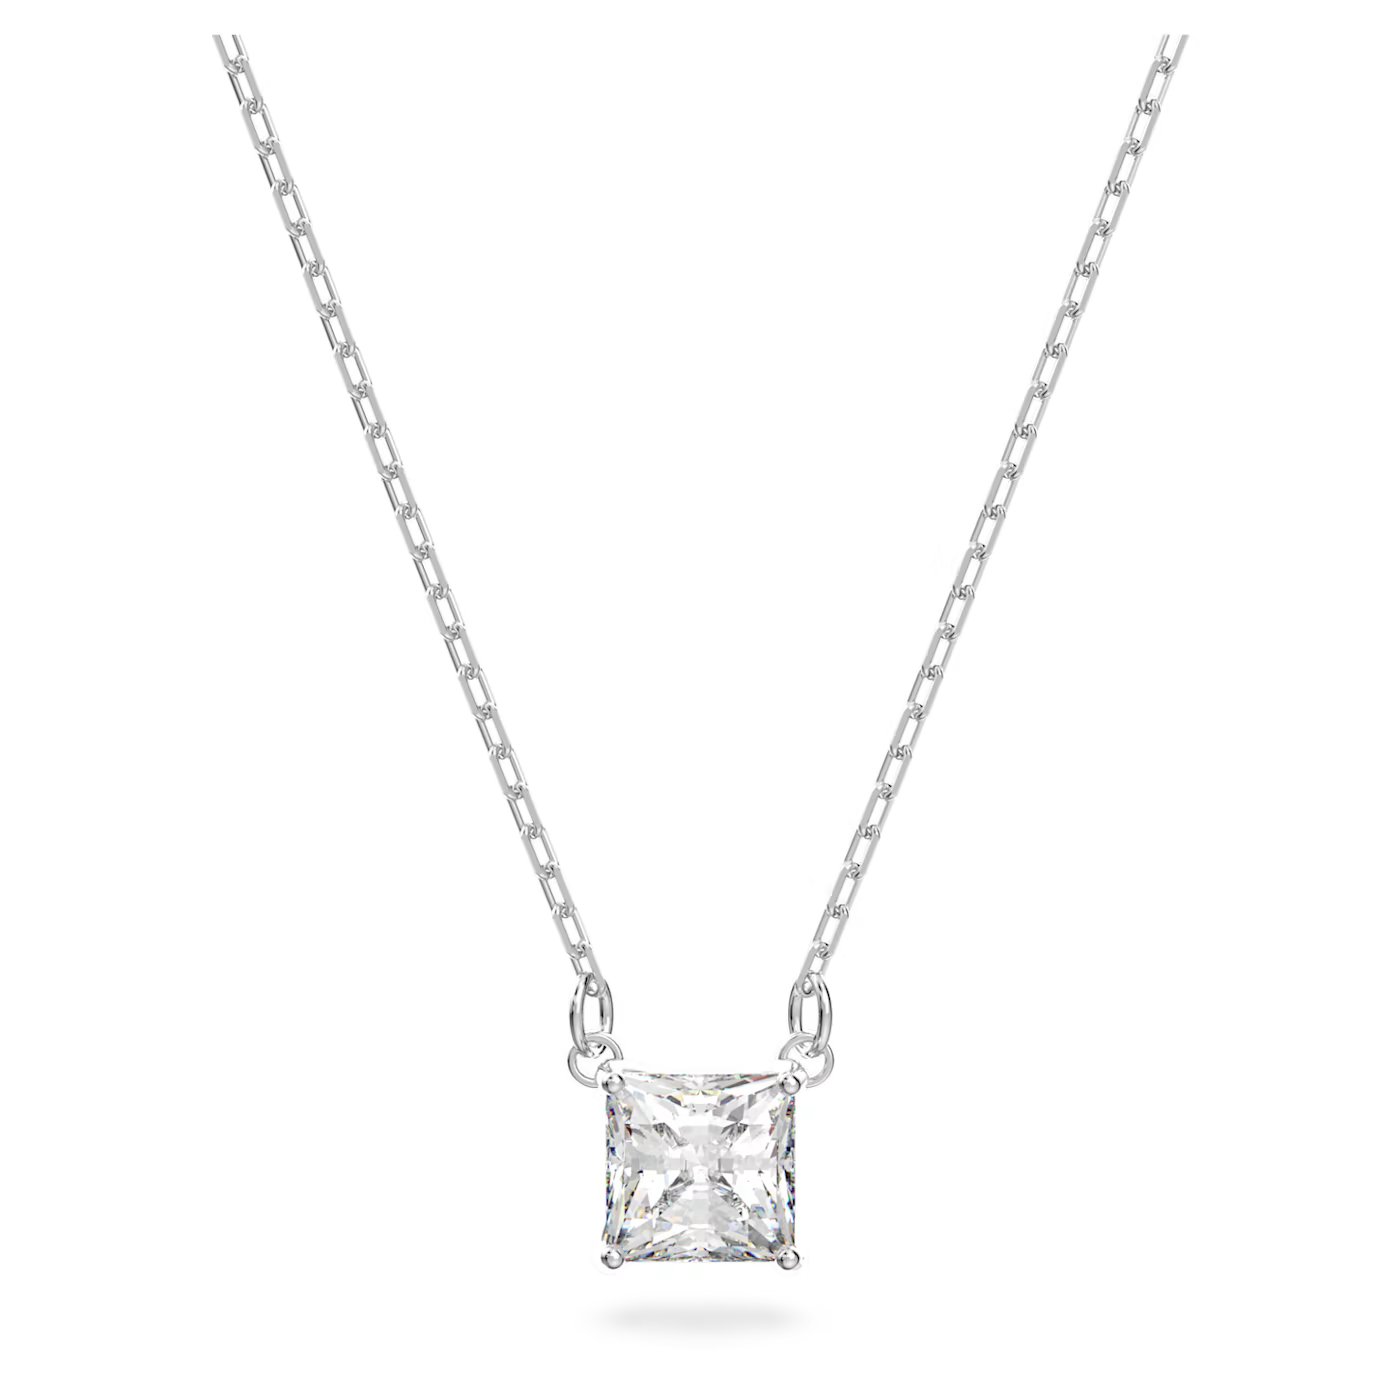 6385da8aa8318_attract-necklace--square-cut--white--rhodium-plated-swarovski-5510696.jpg